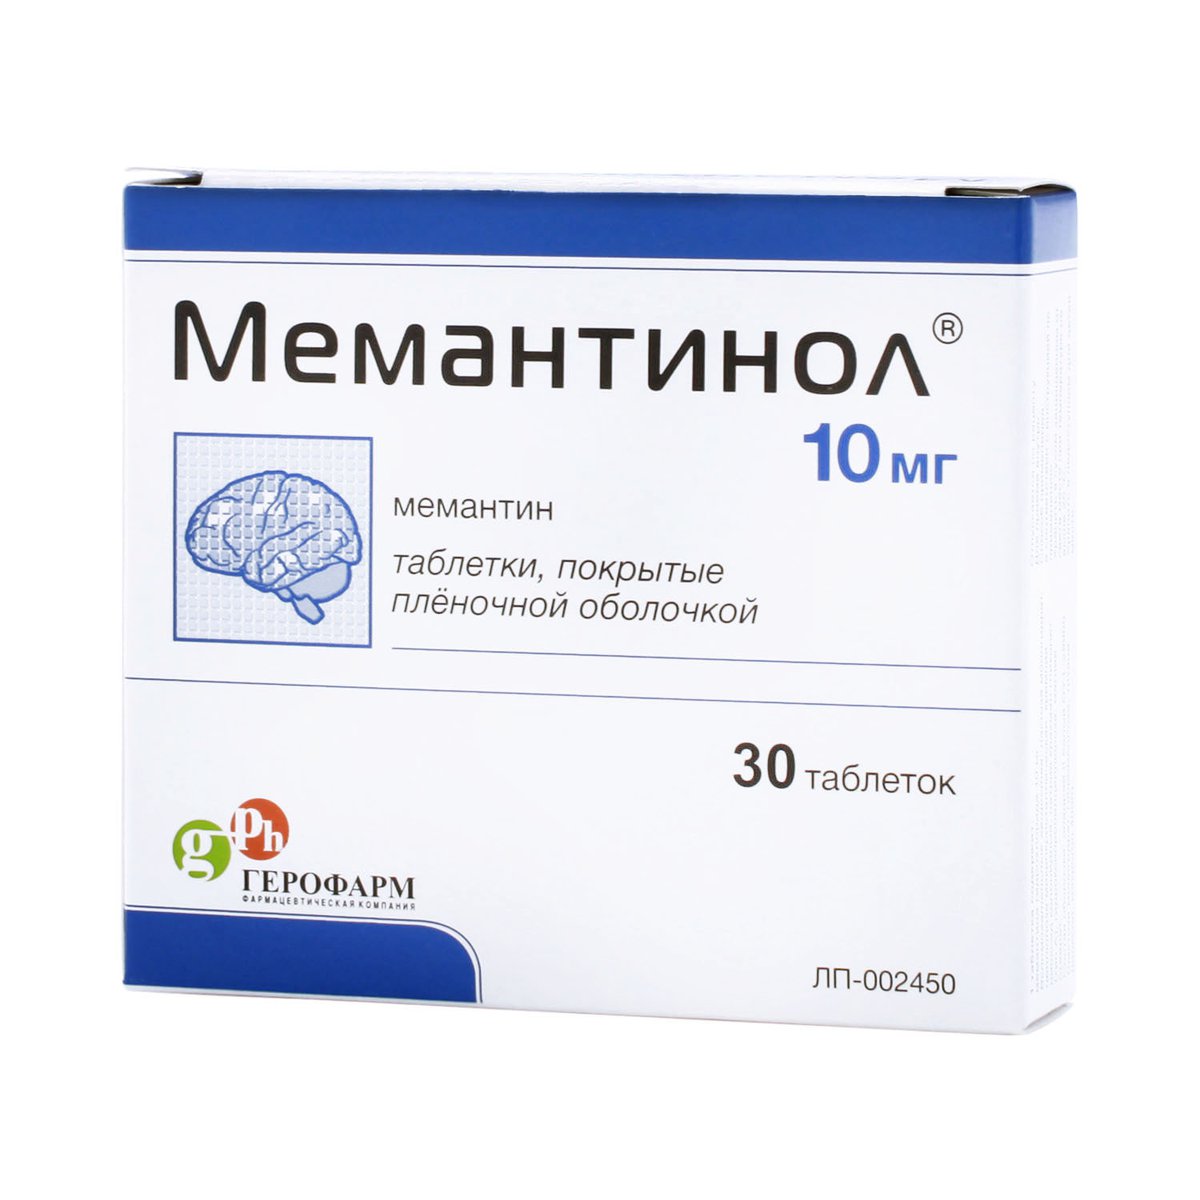 Мемантинол (таблетки, 30 шт, 10 мг) - цена,  онлайн  .